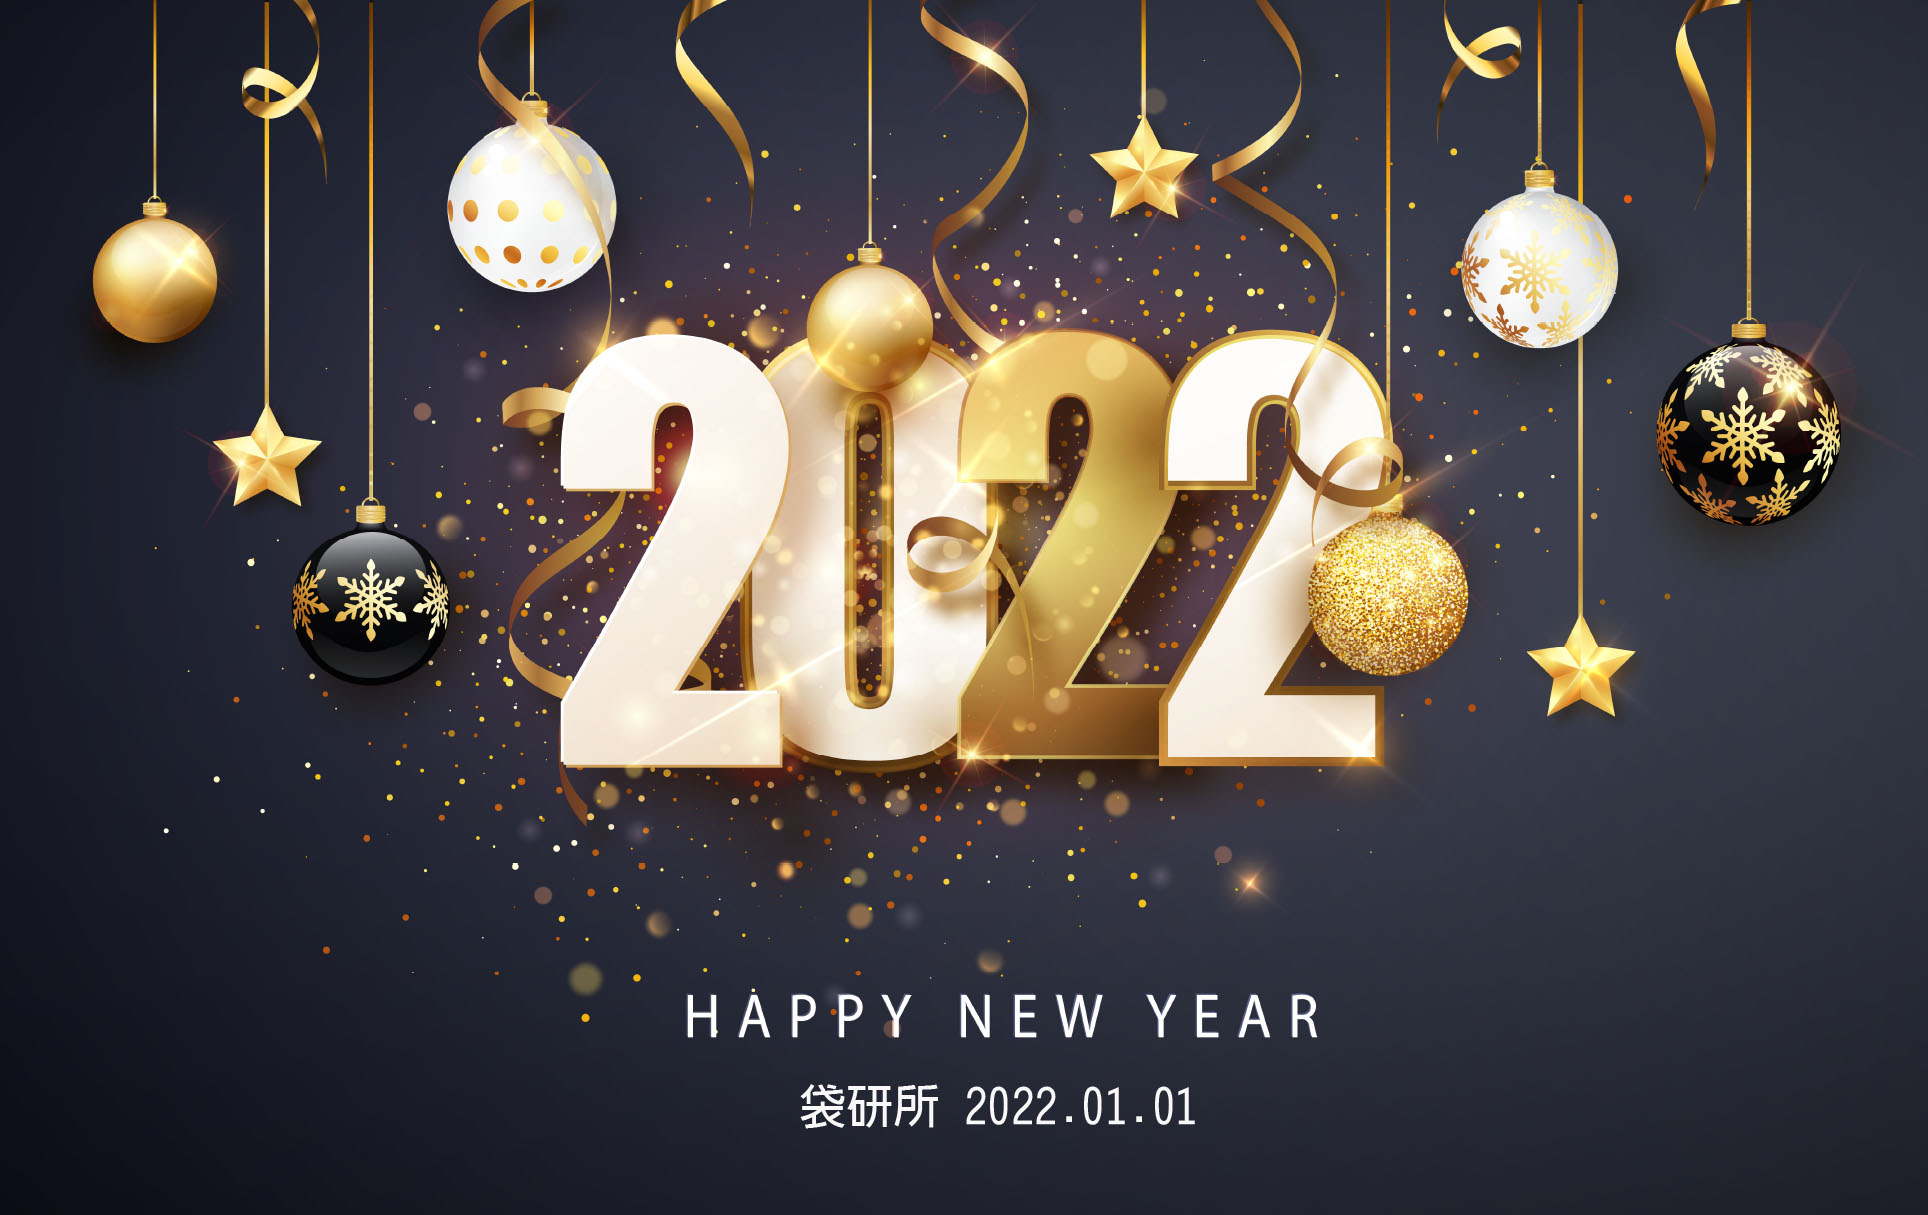 祝大家 2022 新年快樂